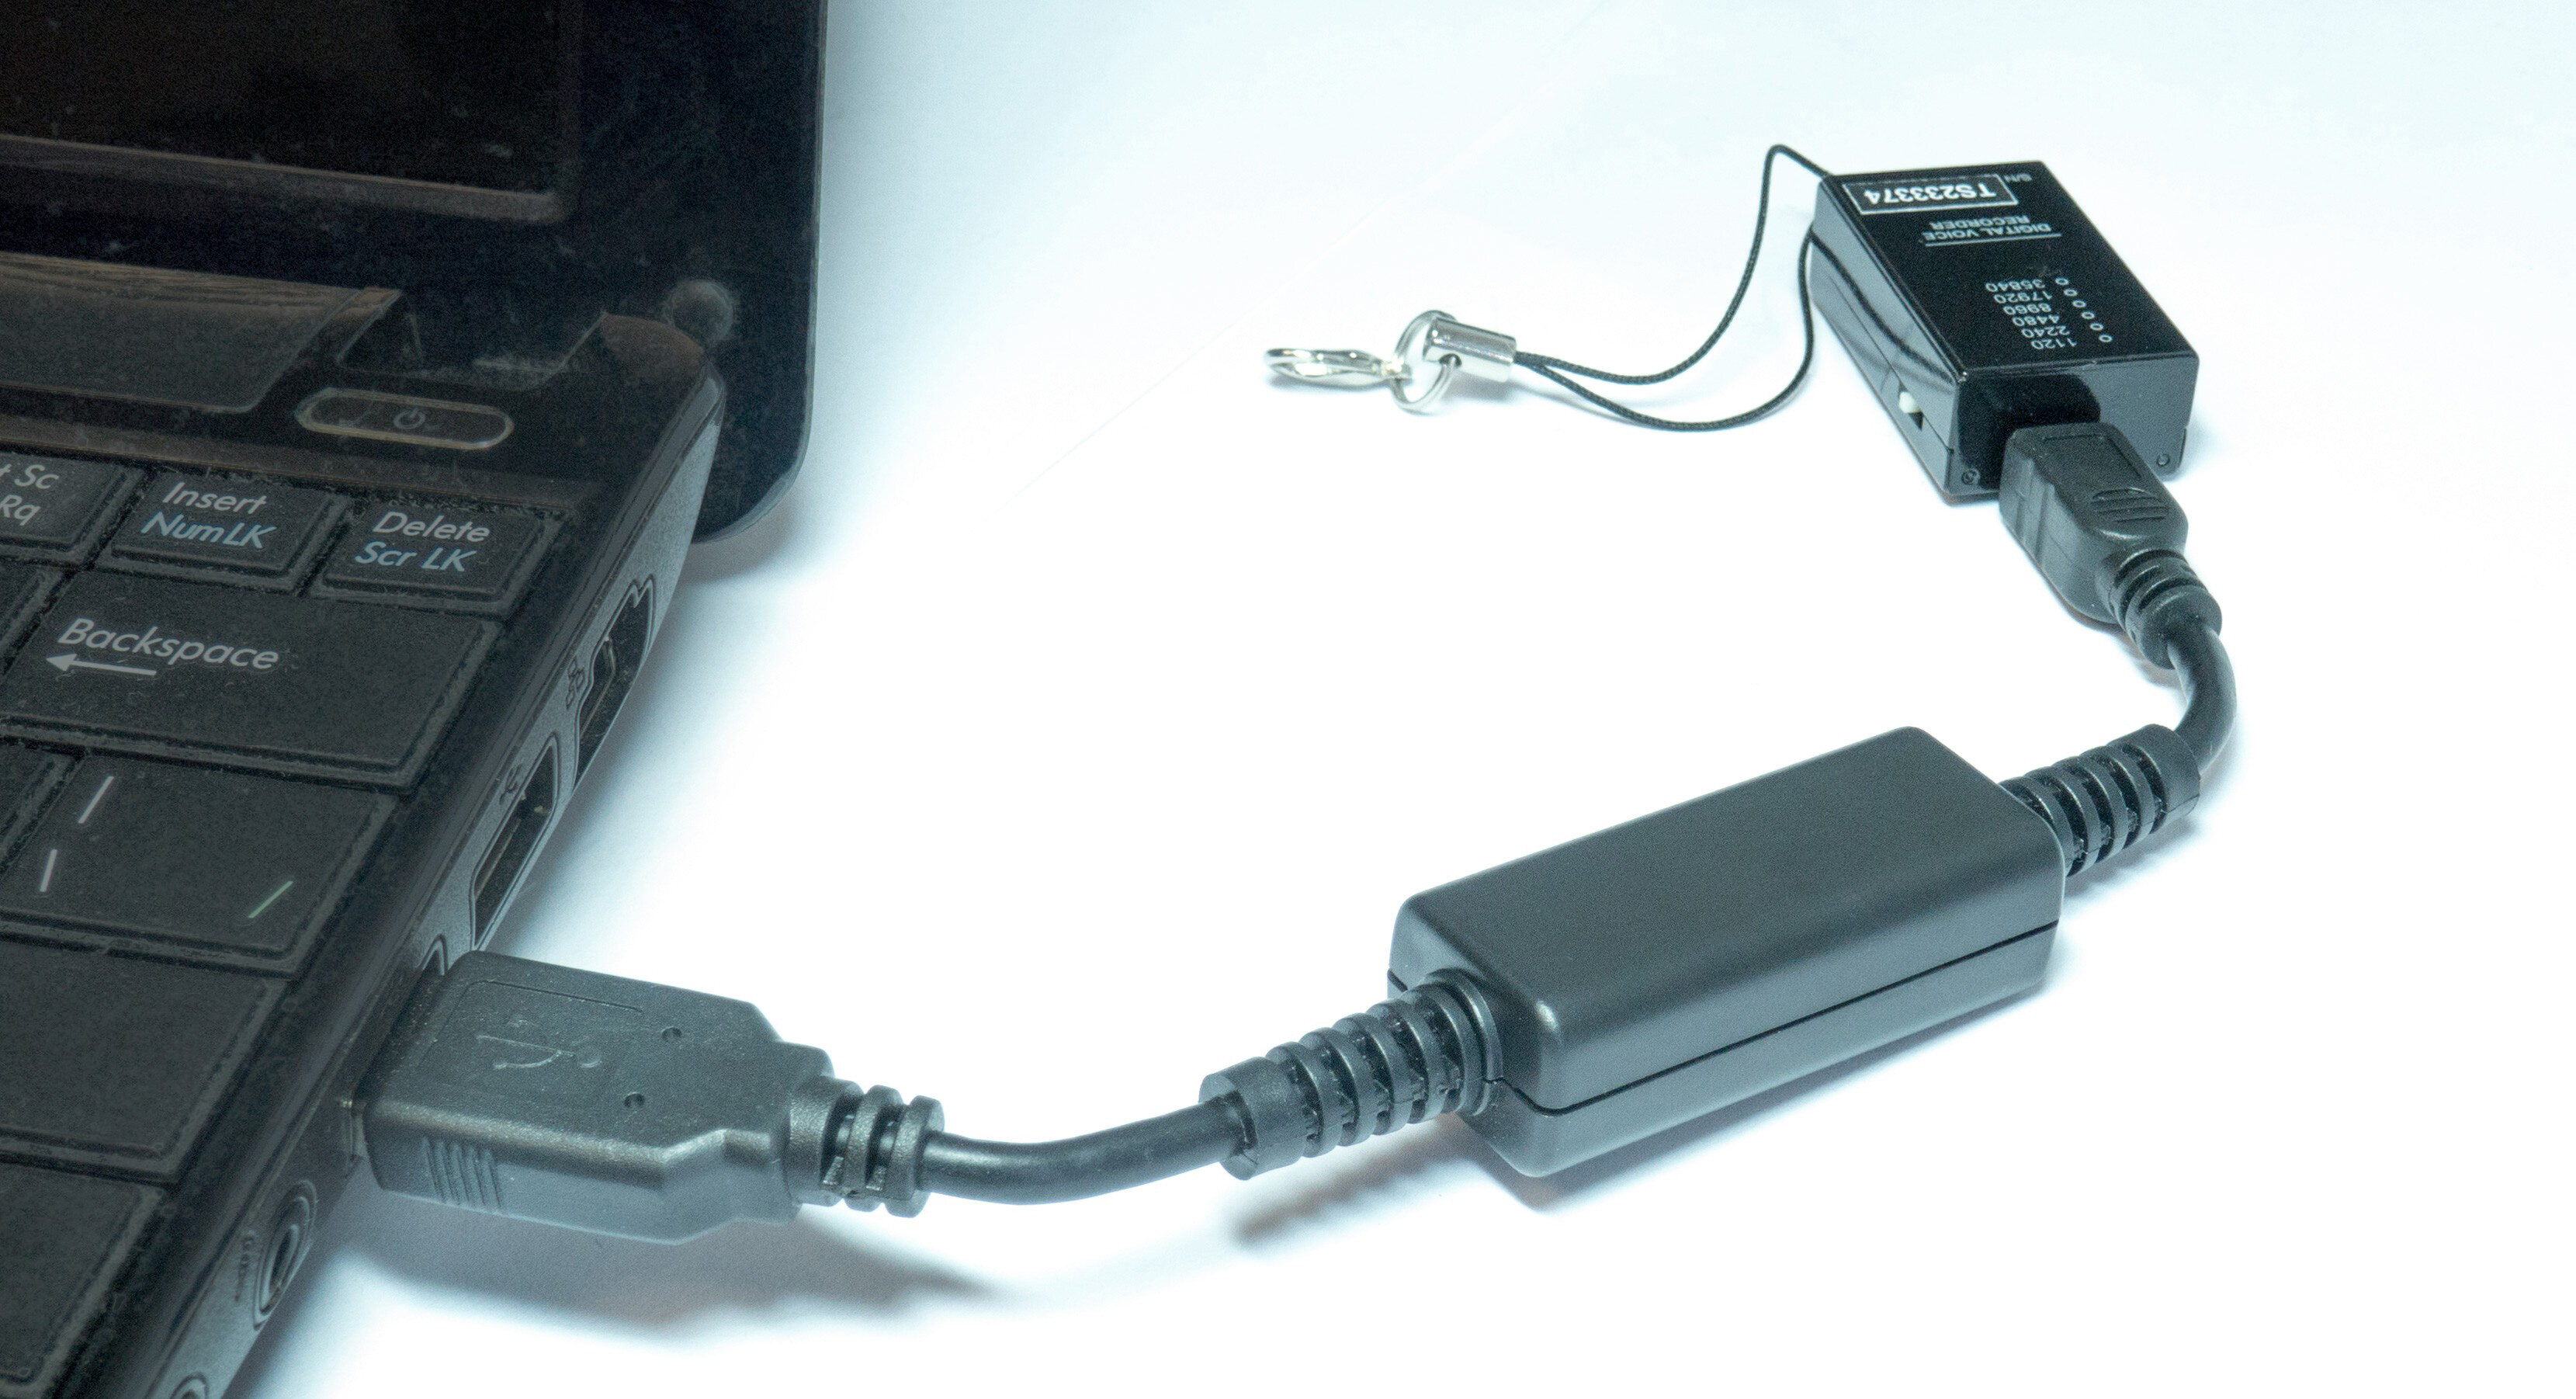 Диктофоны незаметные Edic-mini A23 MicroSD 2 подарка (Power-bank 10000 mAh SD карта) - диктофон микро диктофон в машину подарочная упаковка